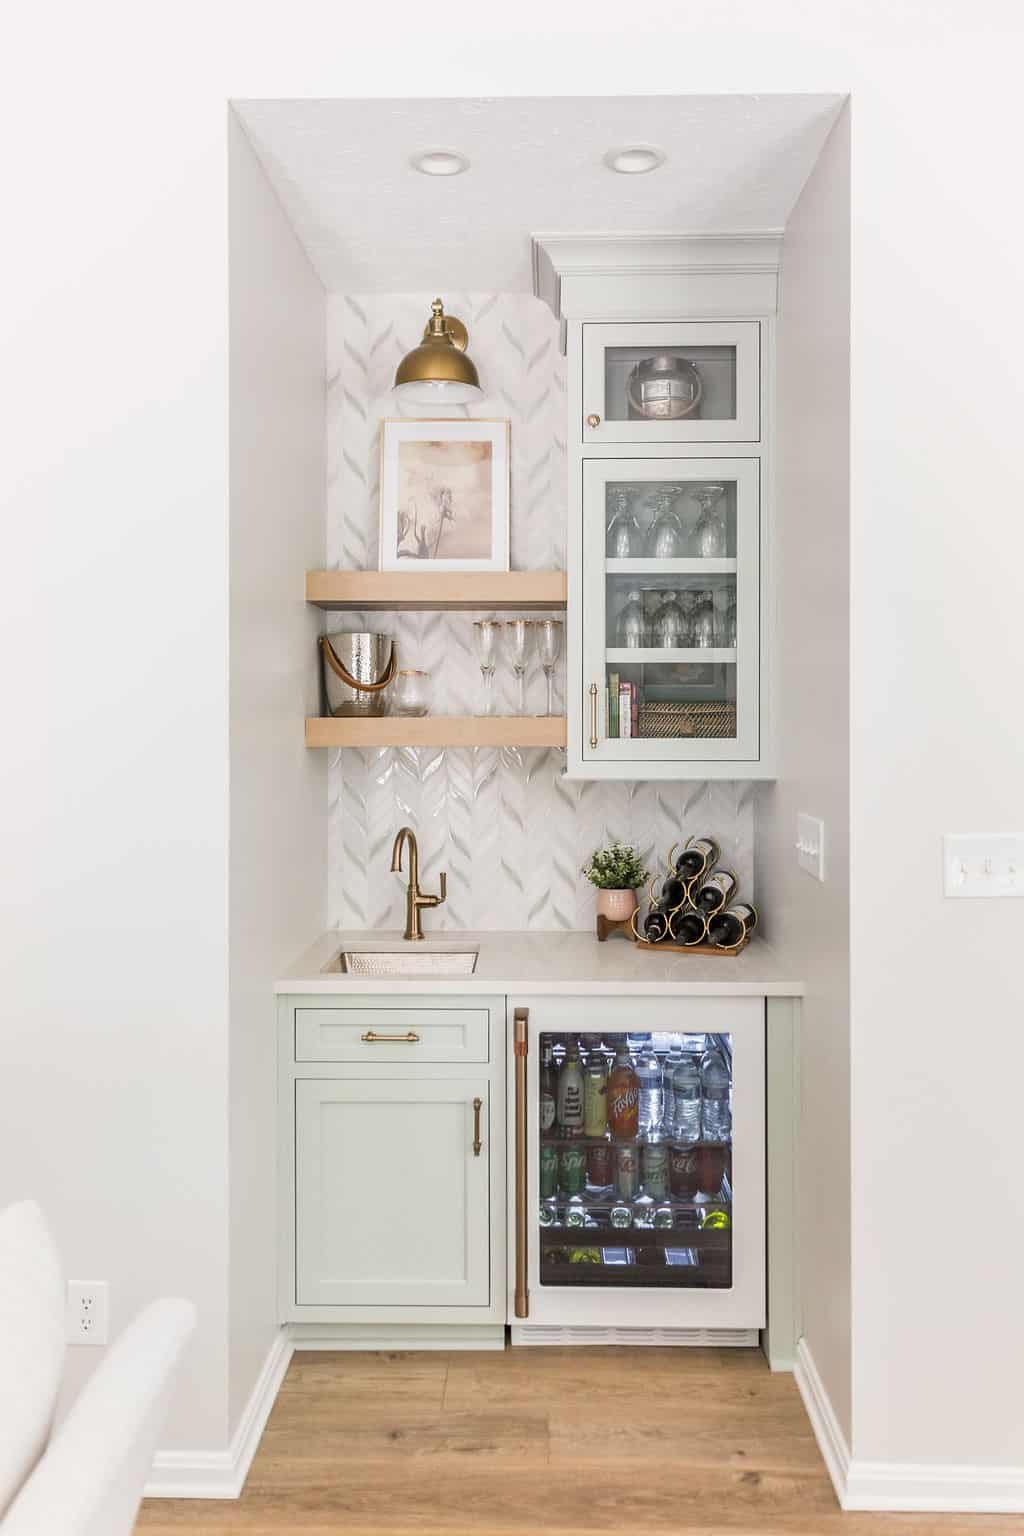 Nicholas Design Build | A modern kitchenette with herringbone tile backsplash, floating shelves, and a built-in beverage fridge.